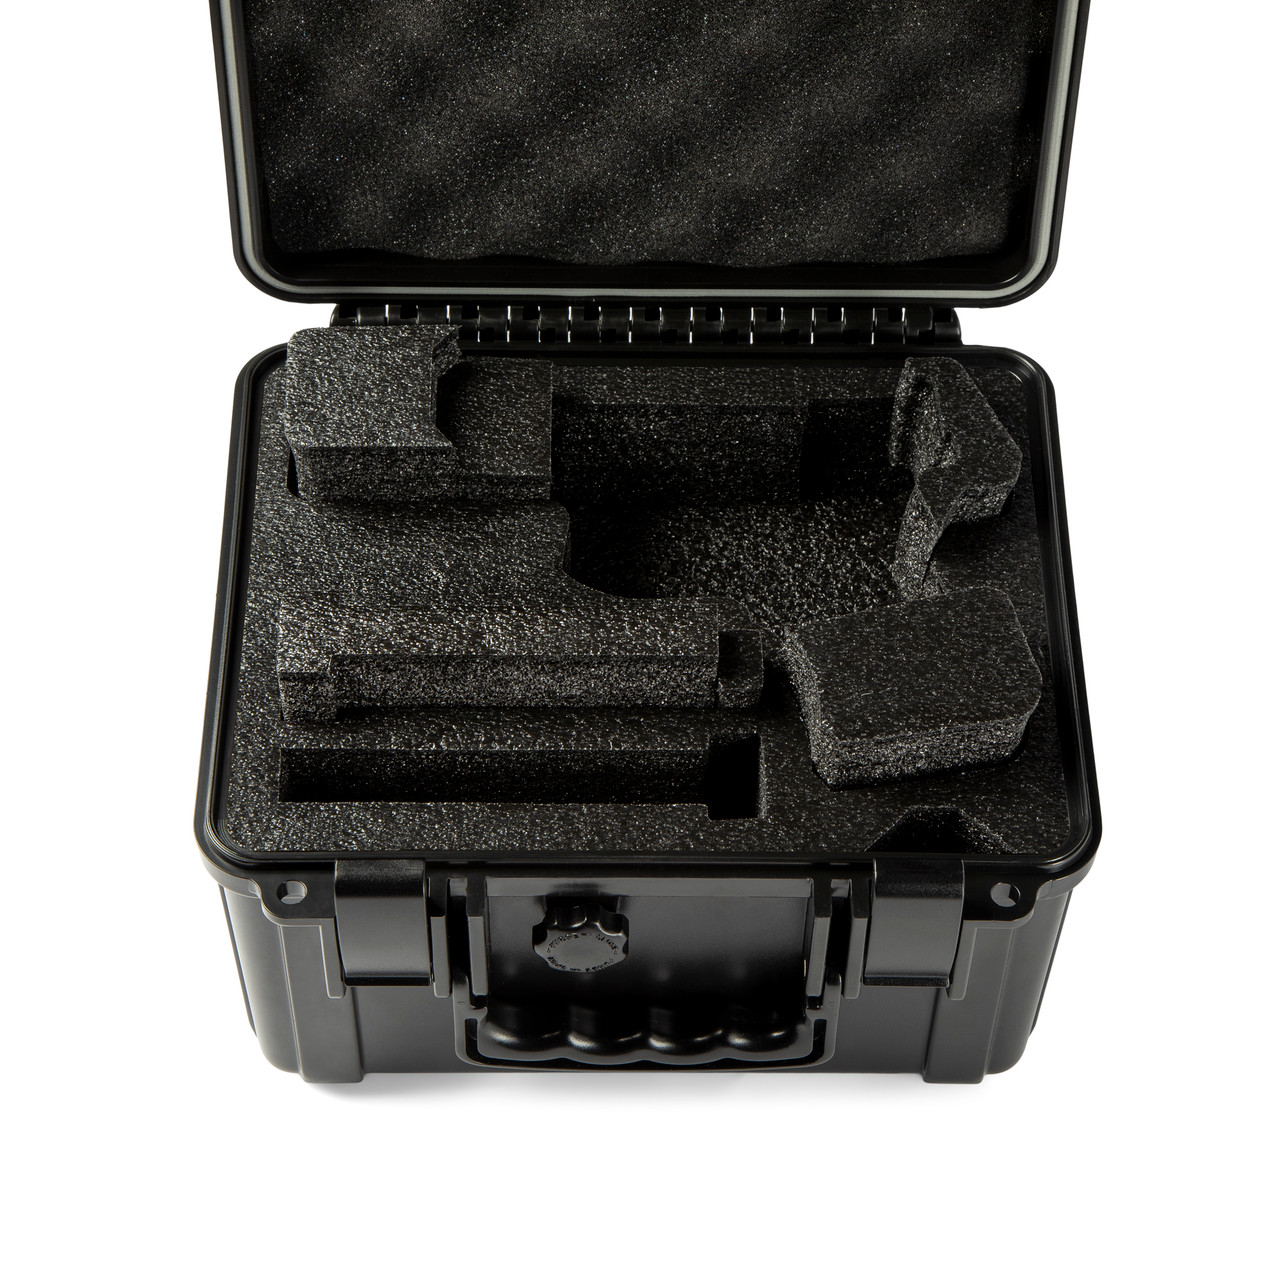 Caisse étanche pour caméra - T5500 - S3 Cases - pour radio